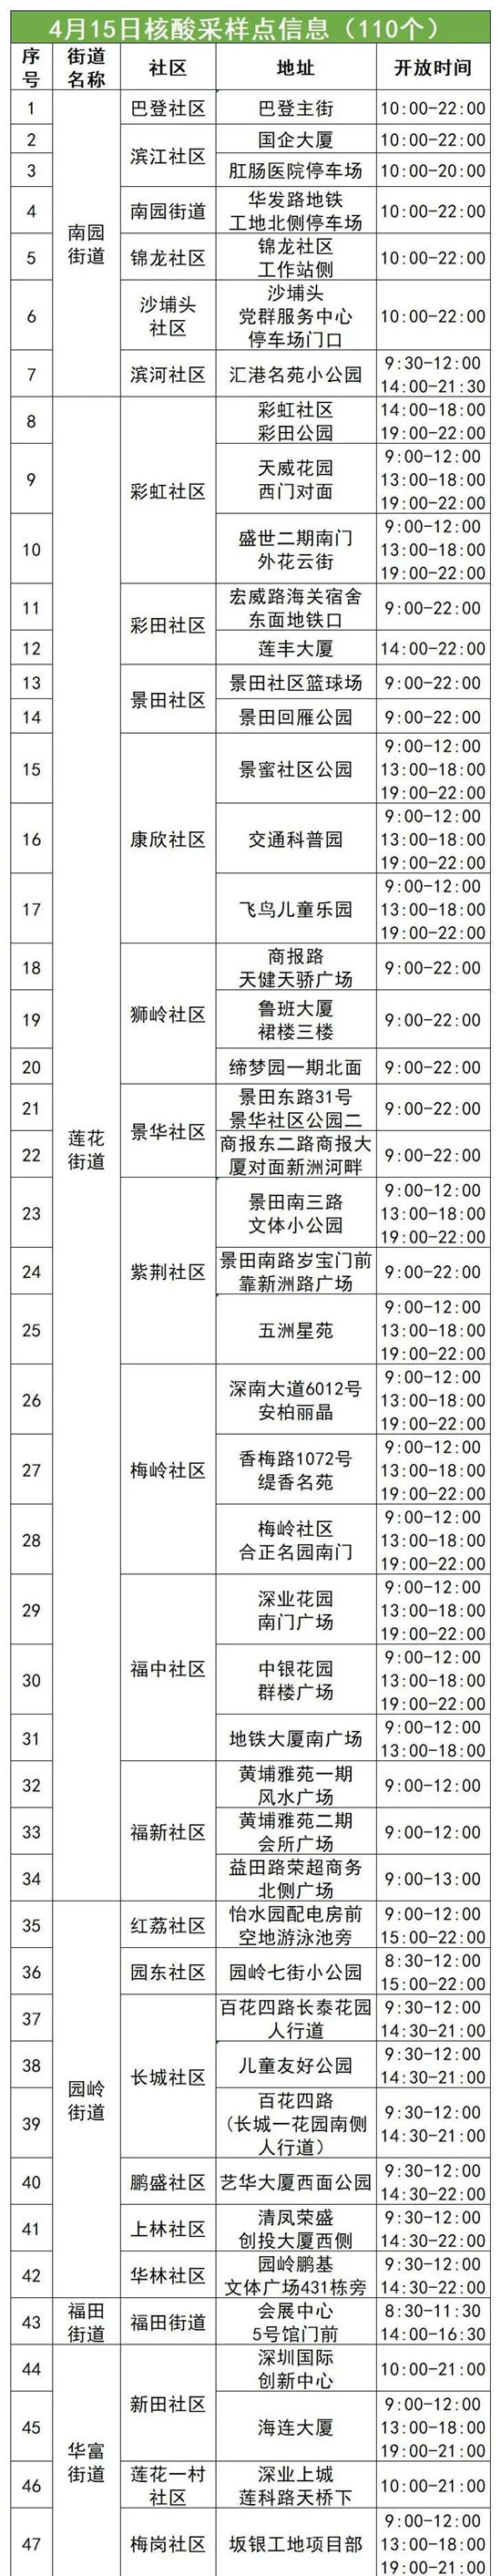 4月15日福田区免费核酸采样点名单